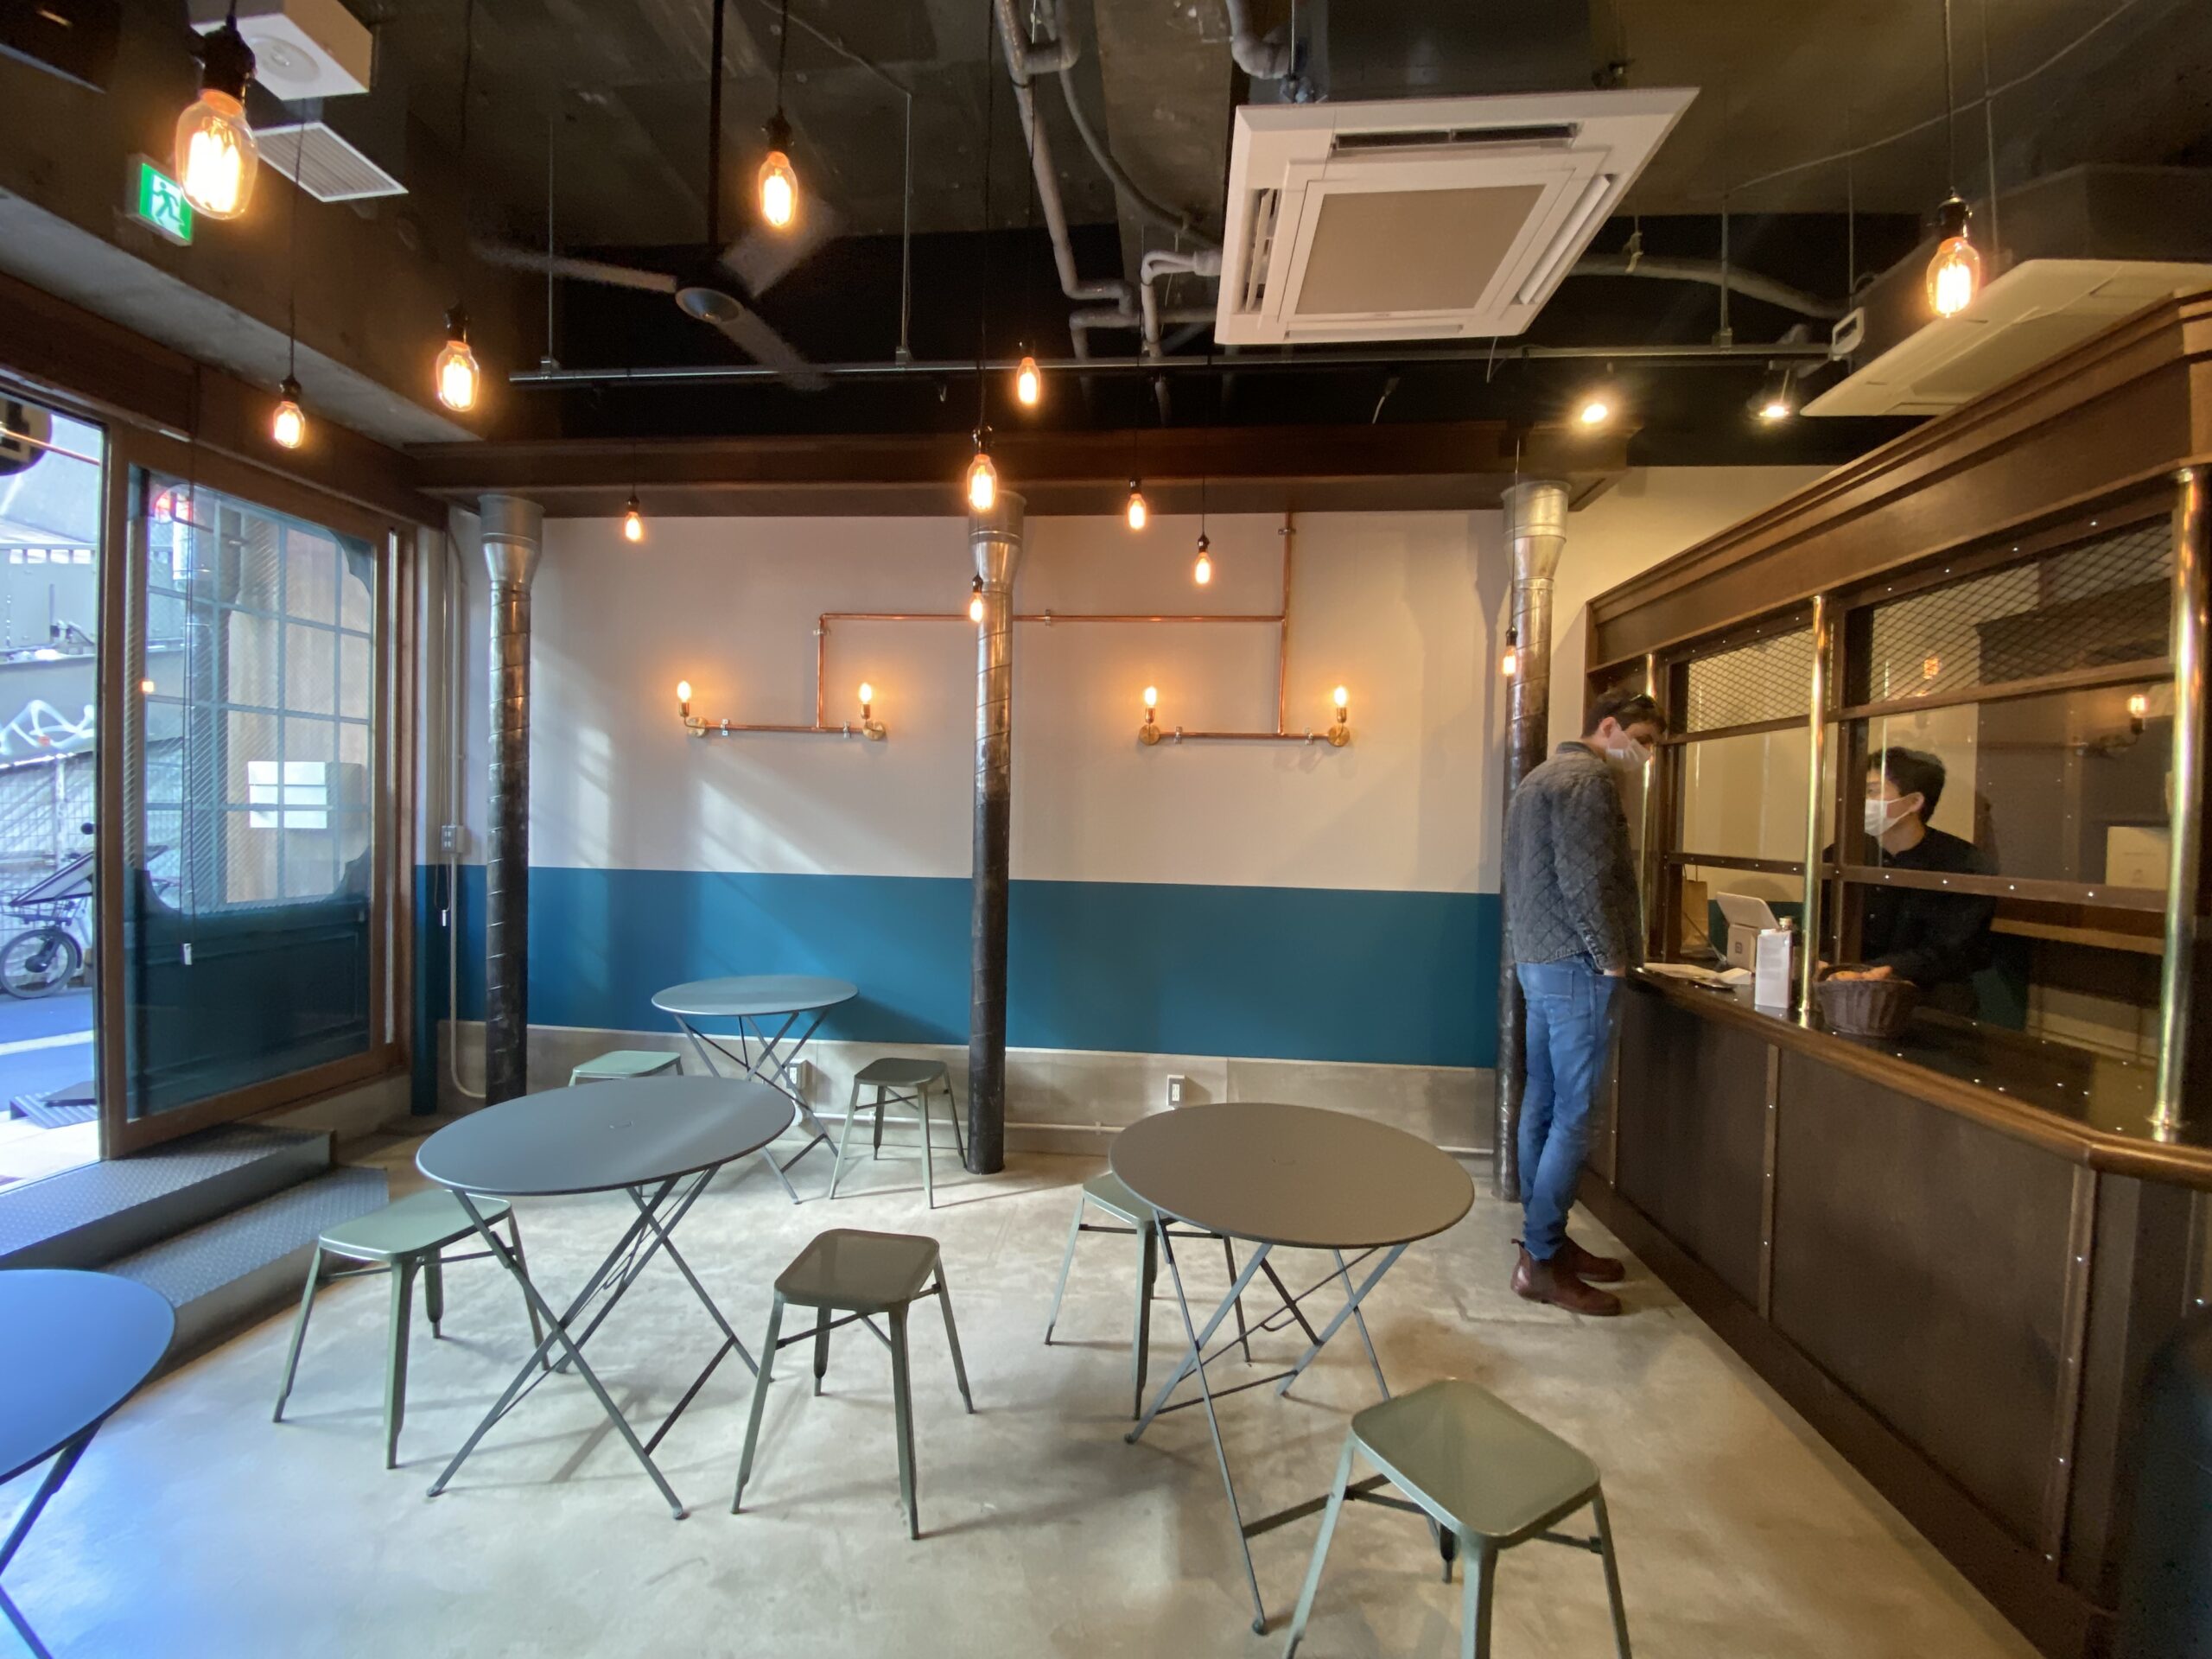 ブルートラベルエンジニア パソコン作業（プログラミング学習環境）におすすめのカフェ|渋谷 CHIMNEY COFFEE